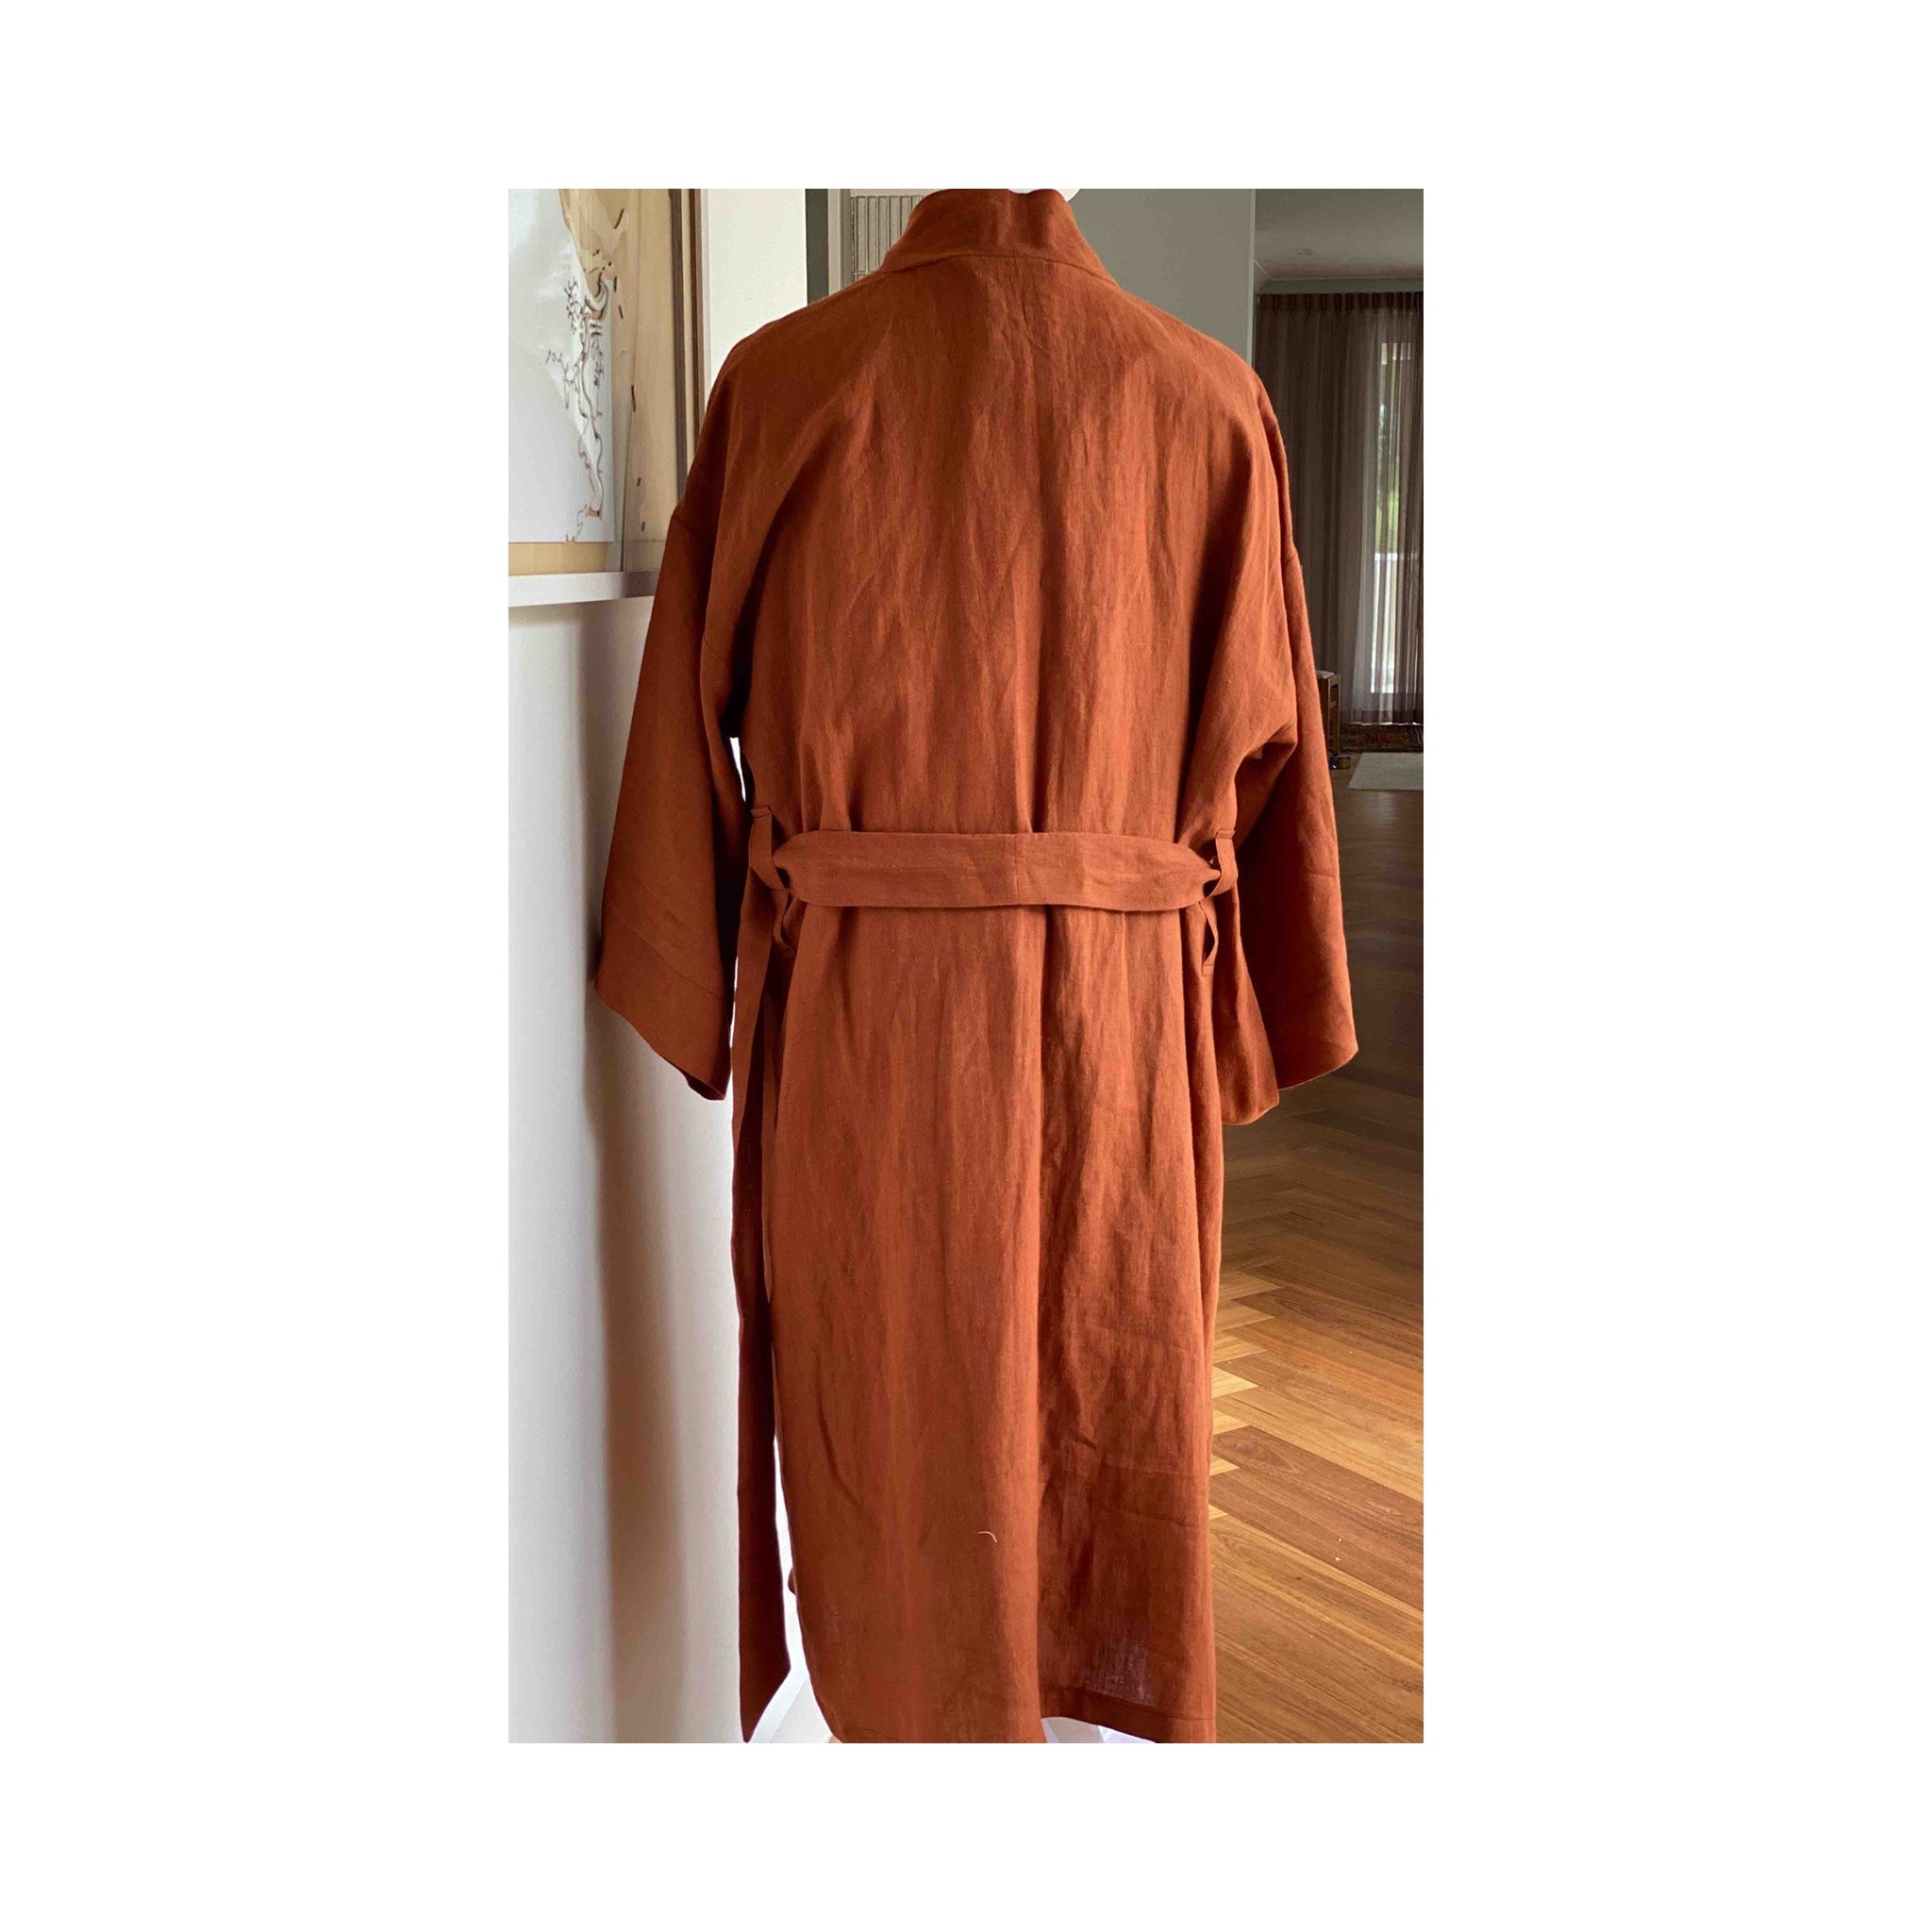 Mens Dressing Gown with Hood Soft Fleece Black XXXL 3XL 4XL 5XL Bath Robe  Gowns | eBay